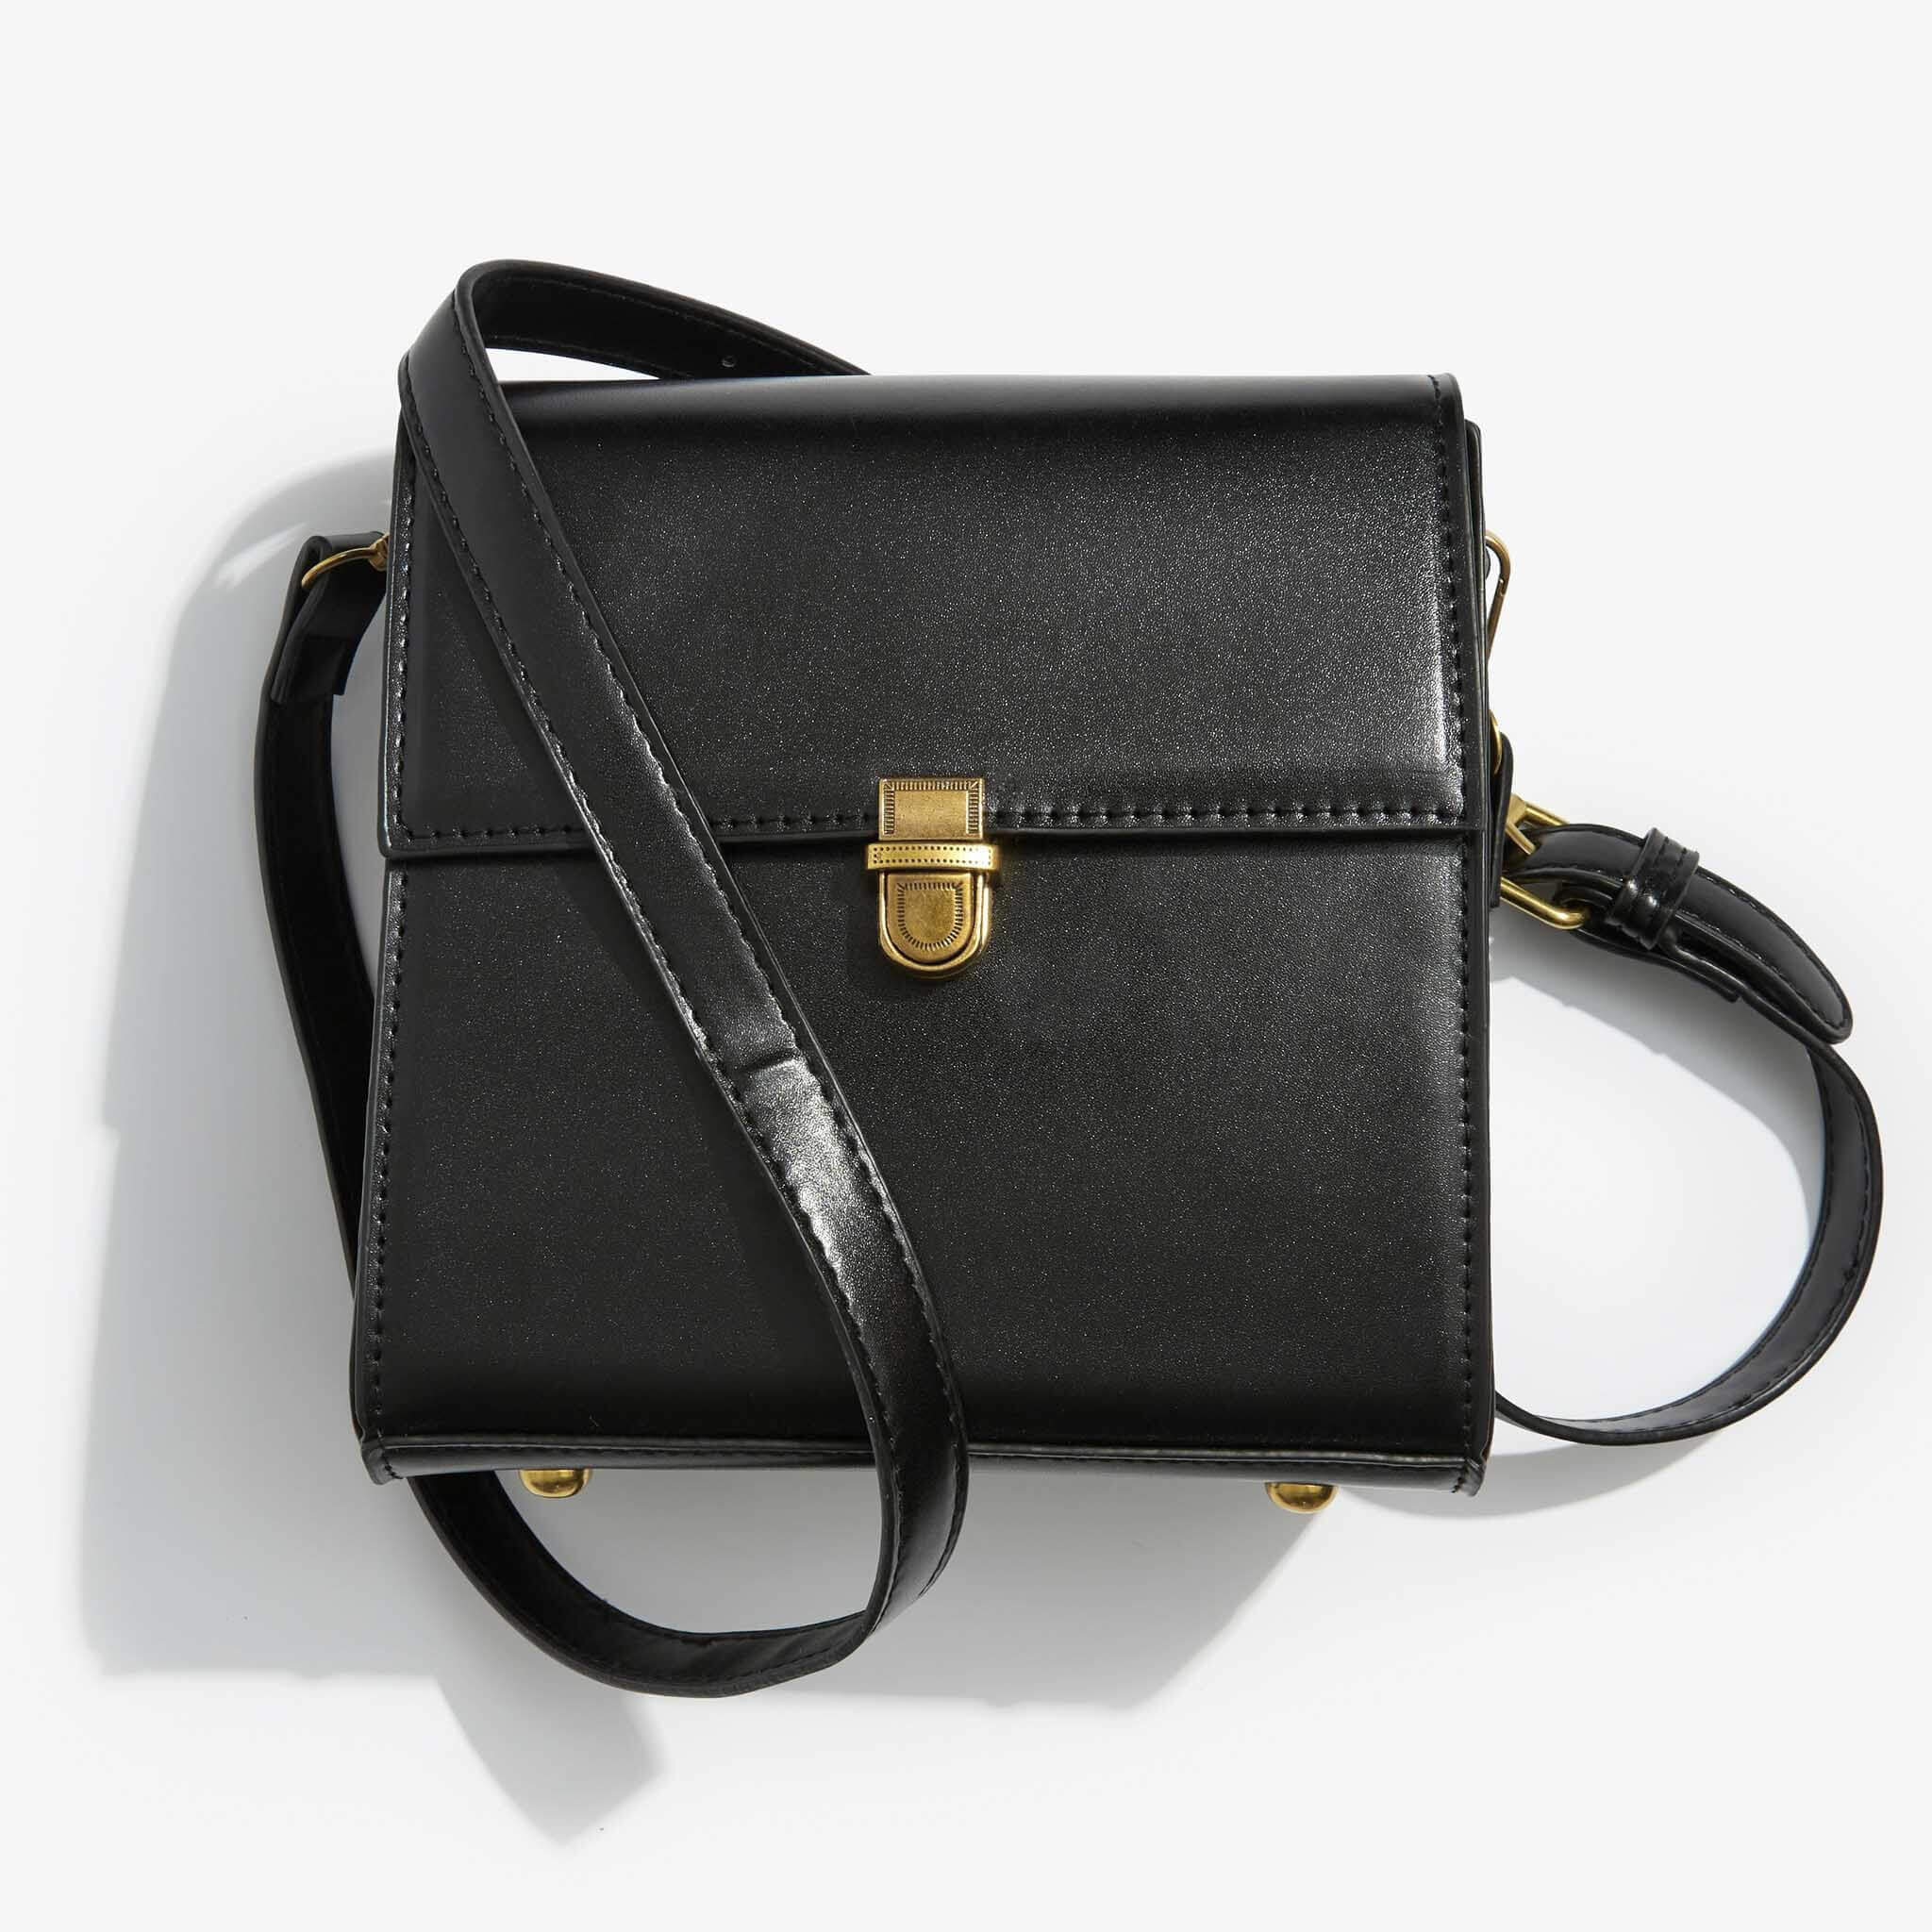 Giorgia handbag in black